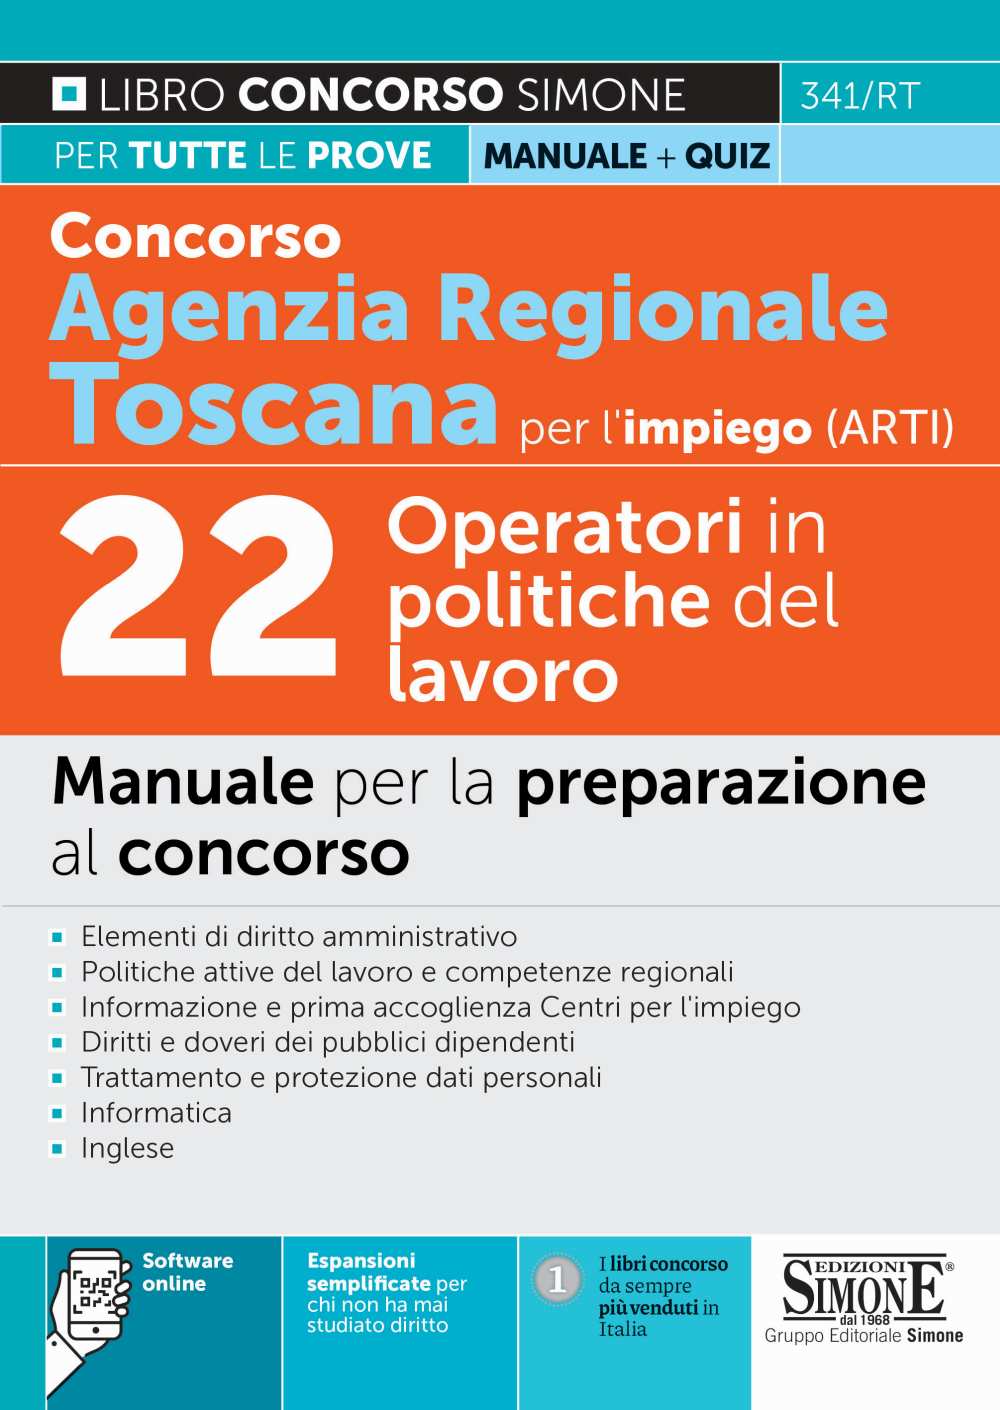 Concorso Agenzia regionale Toscana per l'impiego (ARTI) - 22 Operatori in politiche del lavoro - Manuale - 341/RT